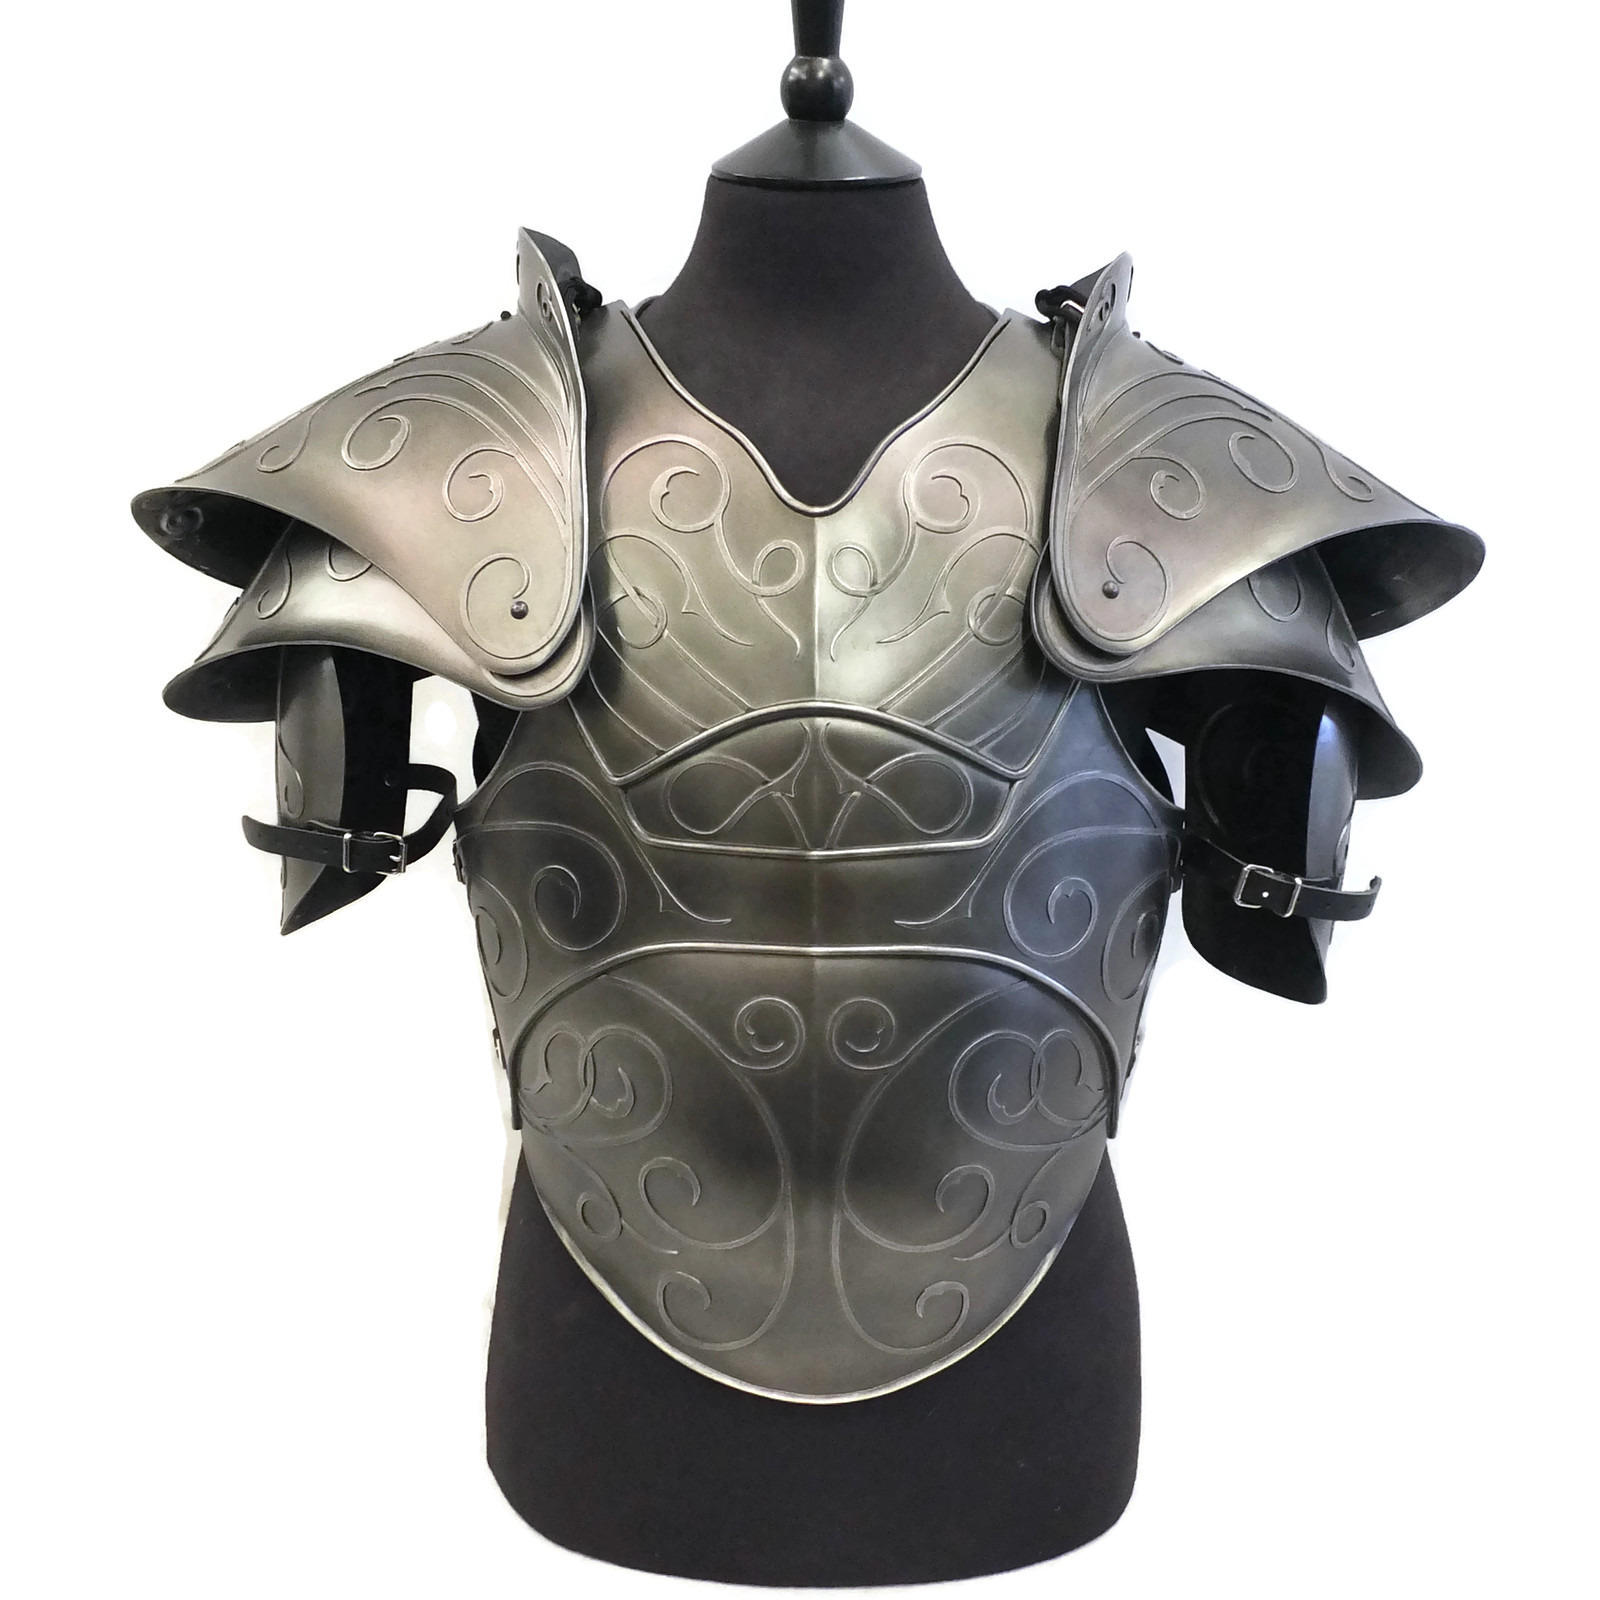 Citadel fantasy larp armour